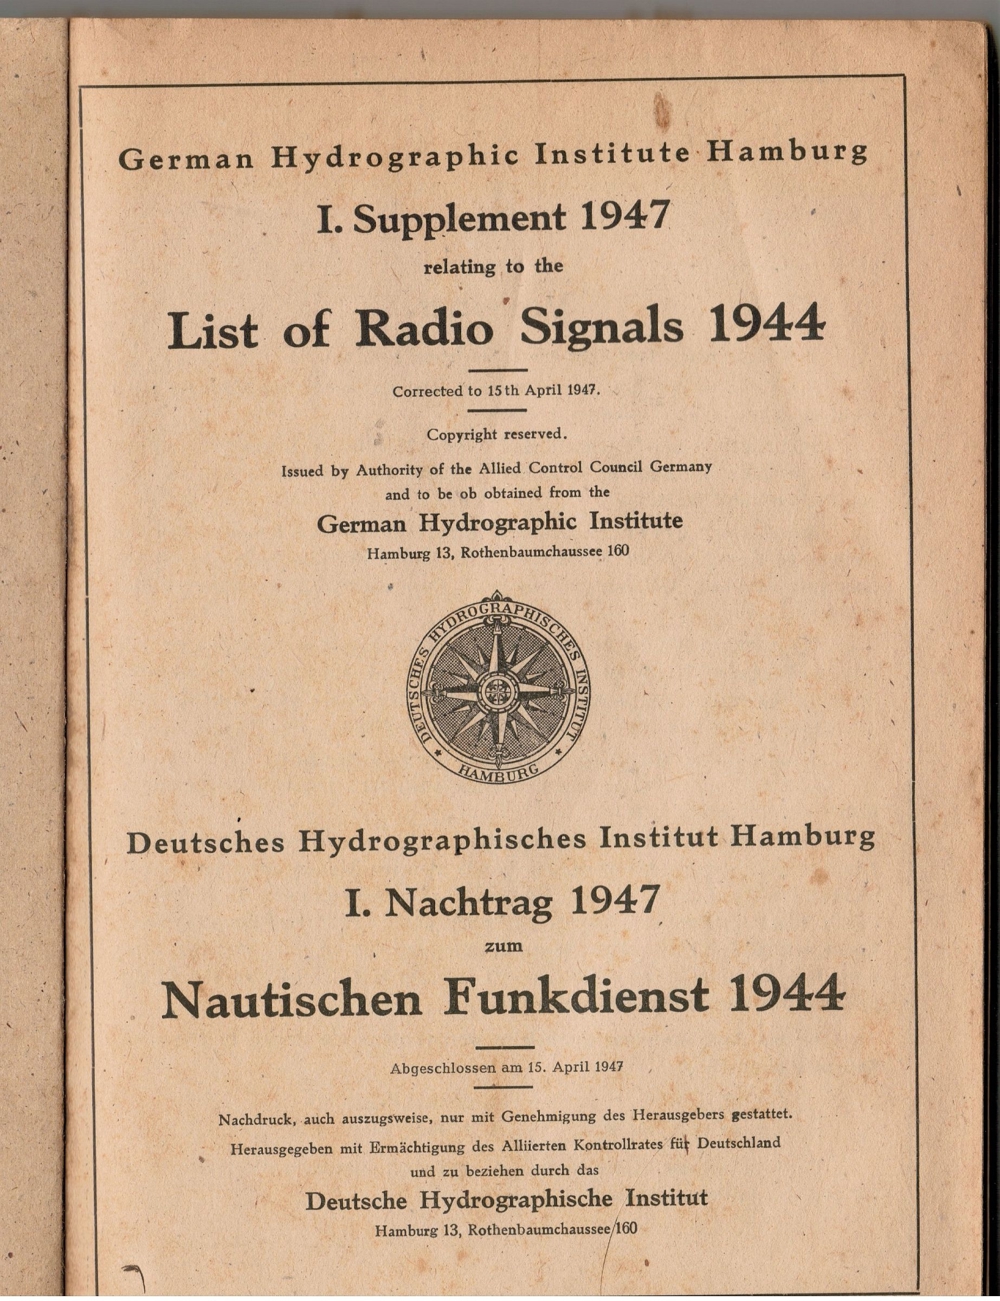 Deutsches Hydrographisches Institut Hamburg I. Nachtrag 1947 zum Nautischen Funkdienst 1944